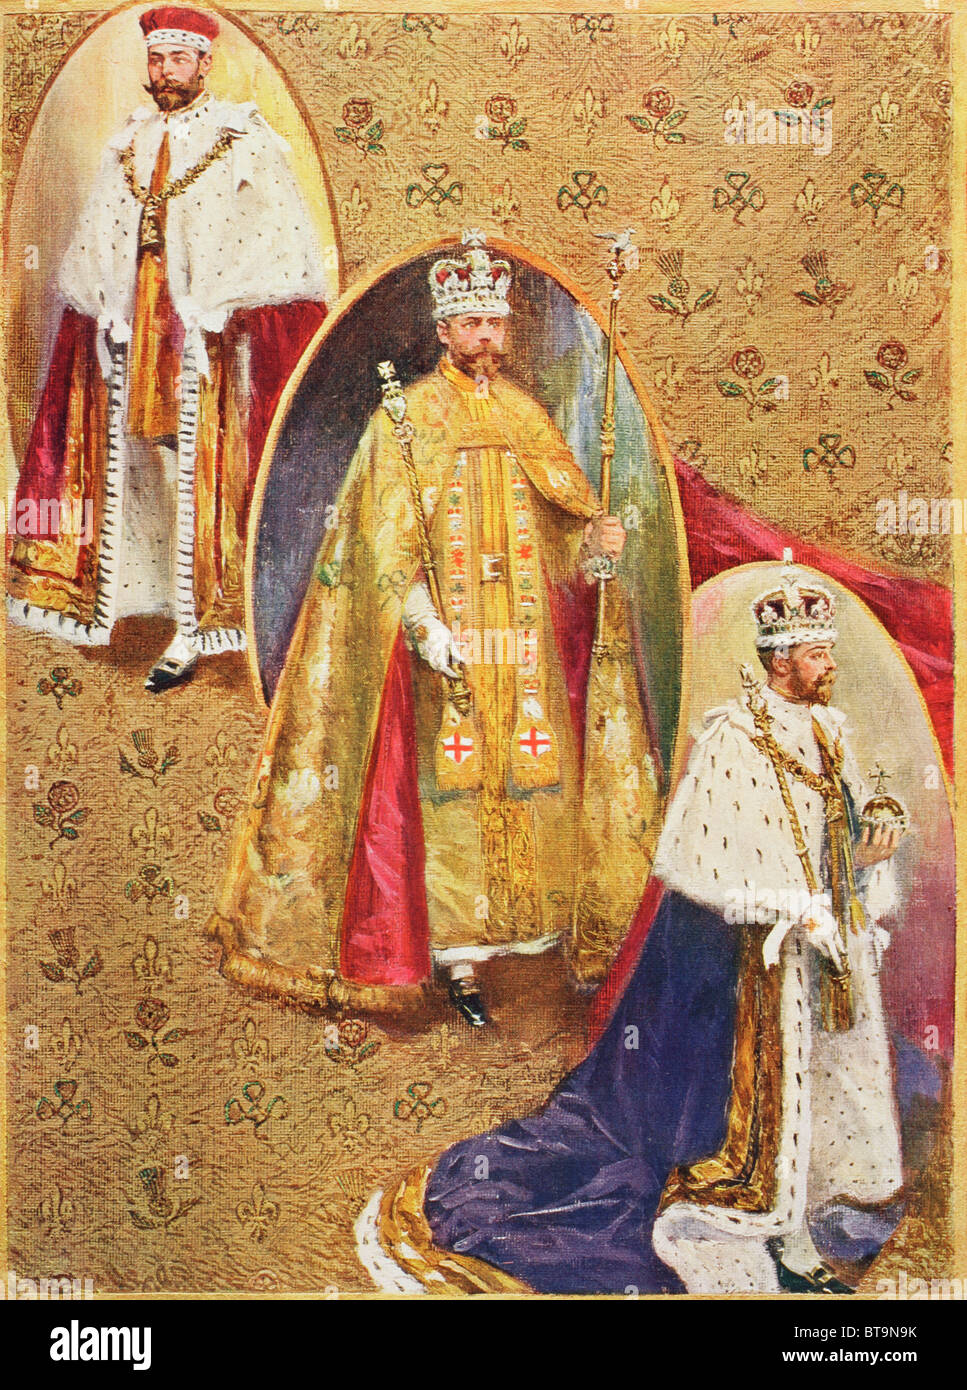 König George V in die drei Roben bei der Krönungszeremonie in der Westminster Abbey getragen. Stockfoto